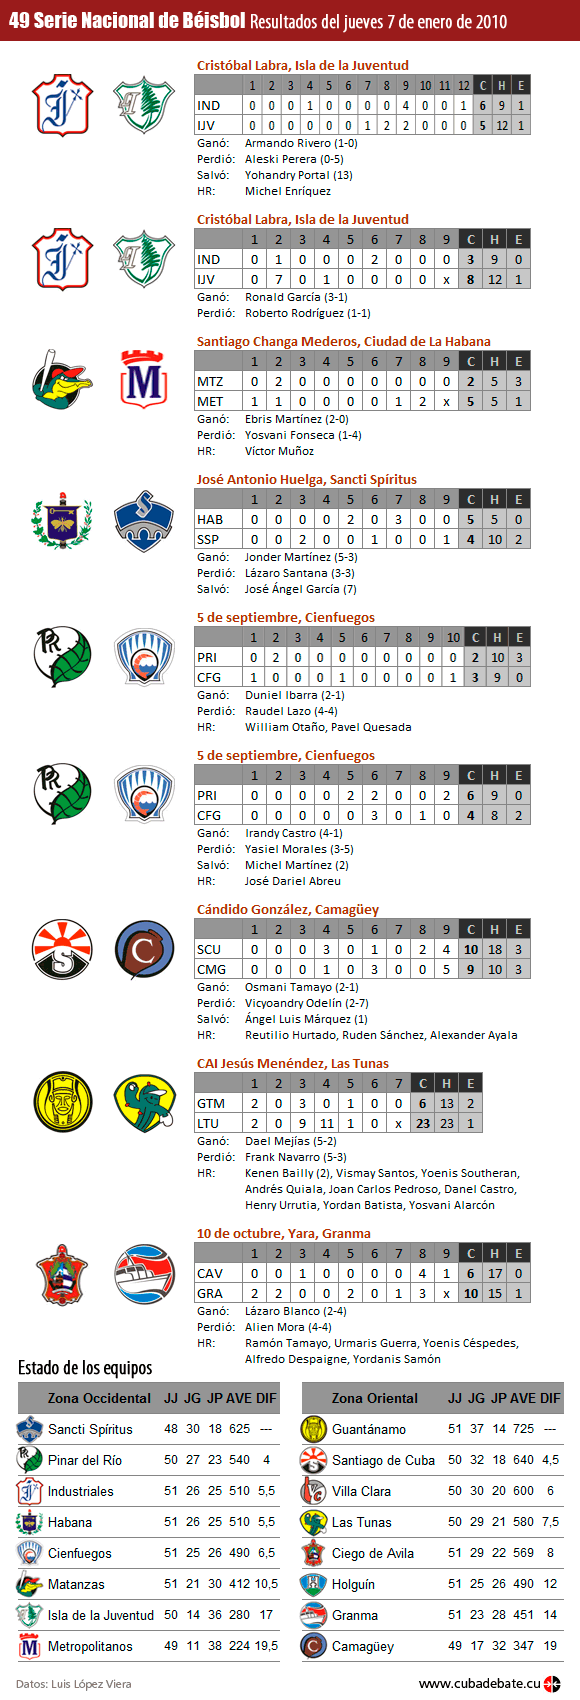 Infografía: Resultados del 7 de enero de 2010, Serie Nacional de Béisbol, Cuba